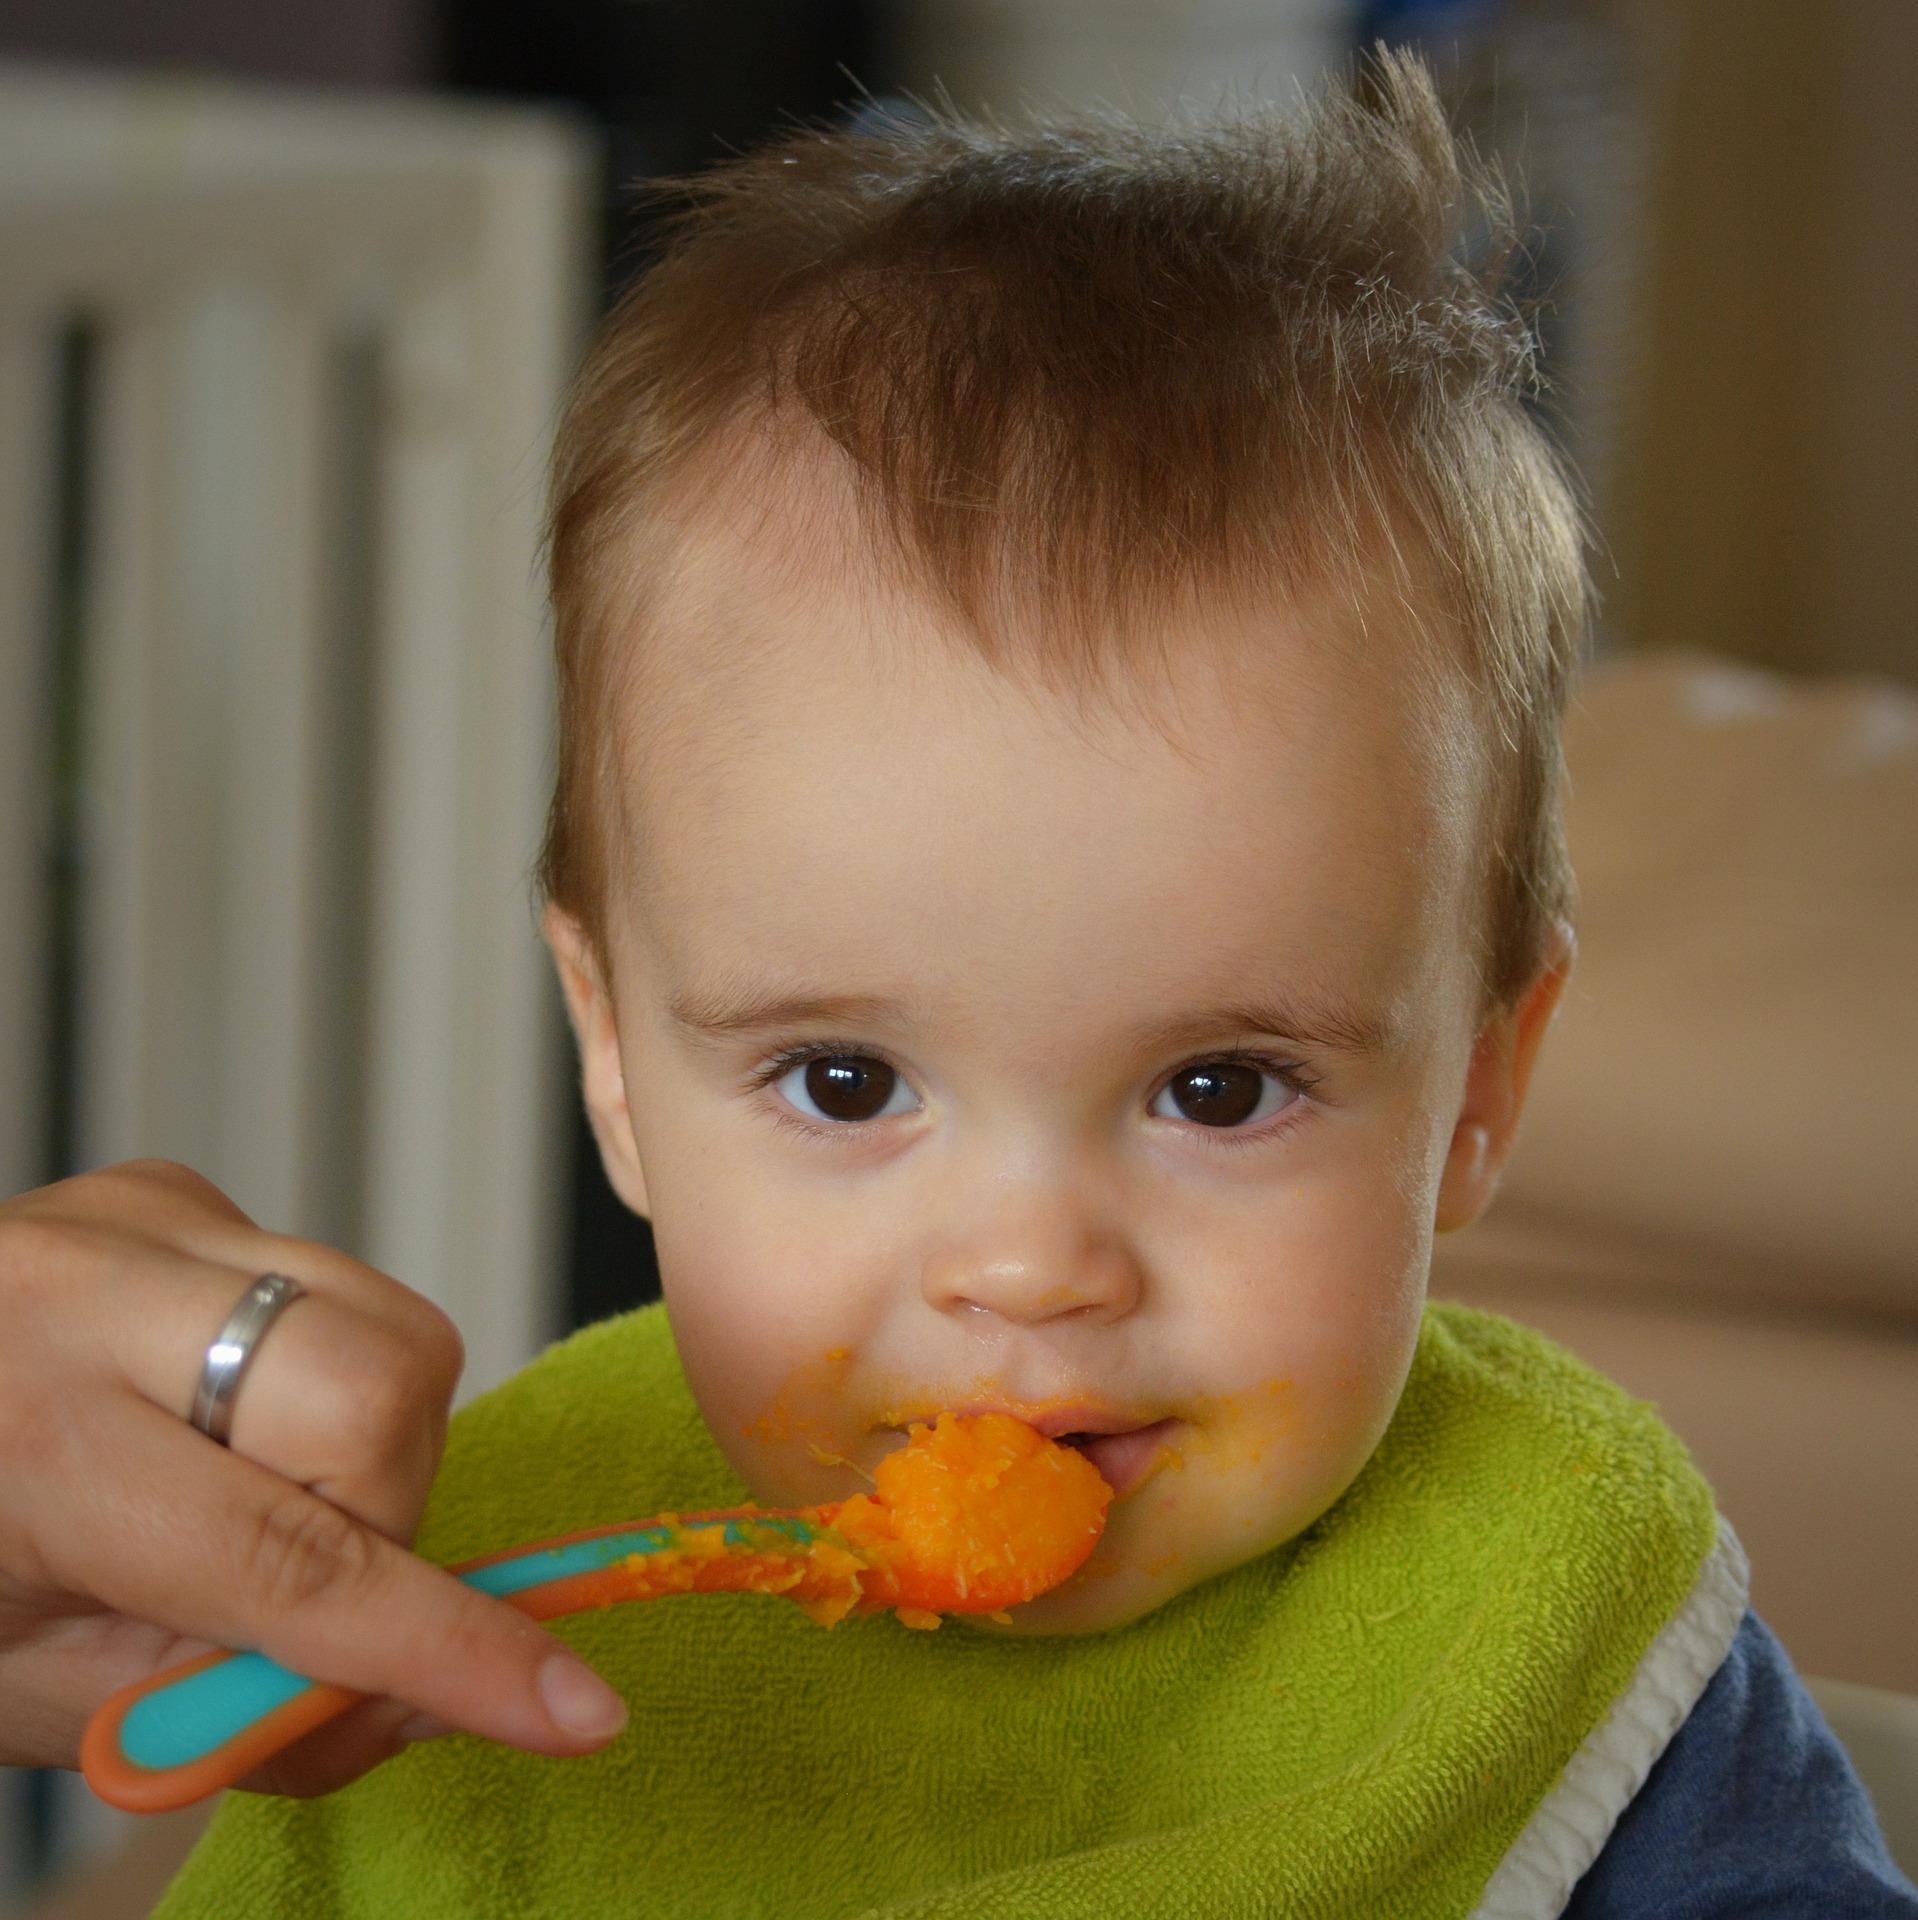 Bébé à 3 mois : langage, motricité, alimentation